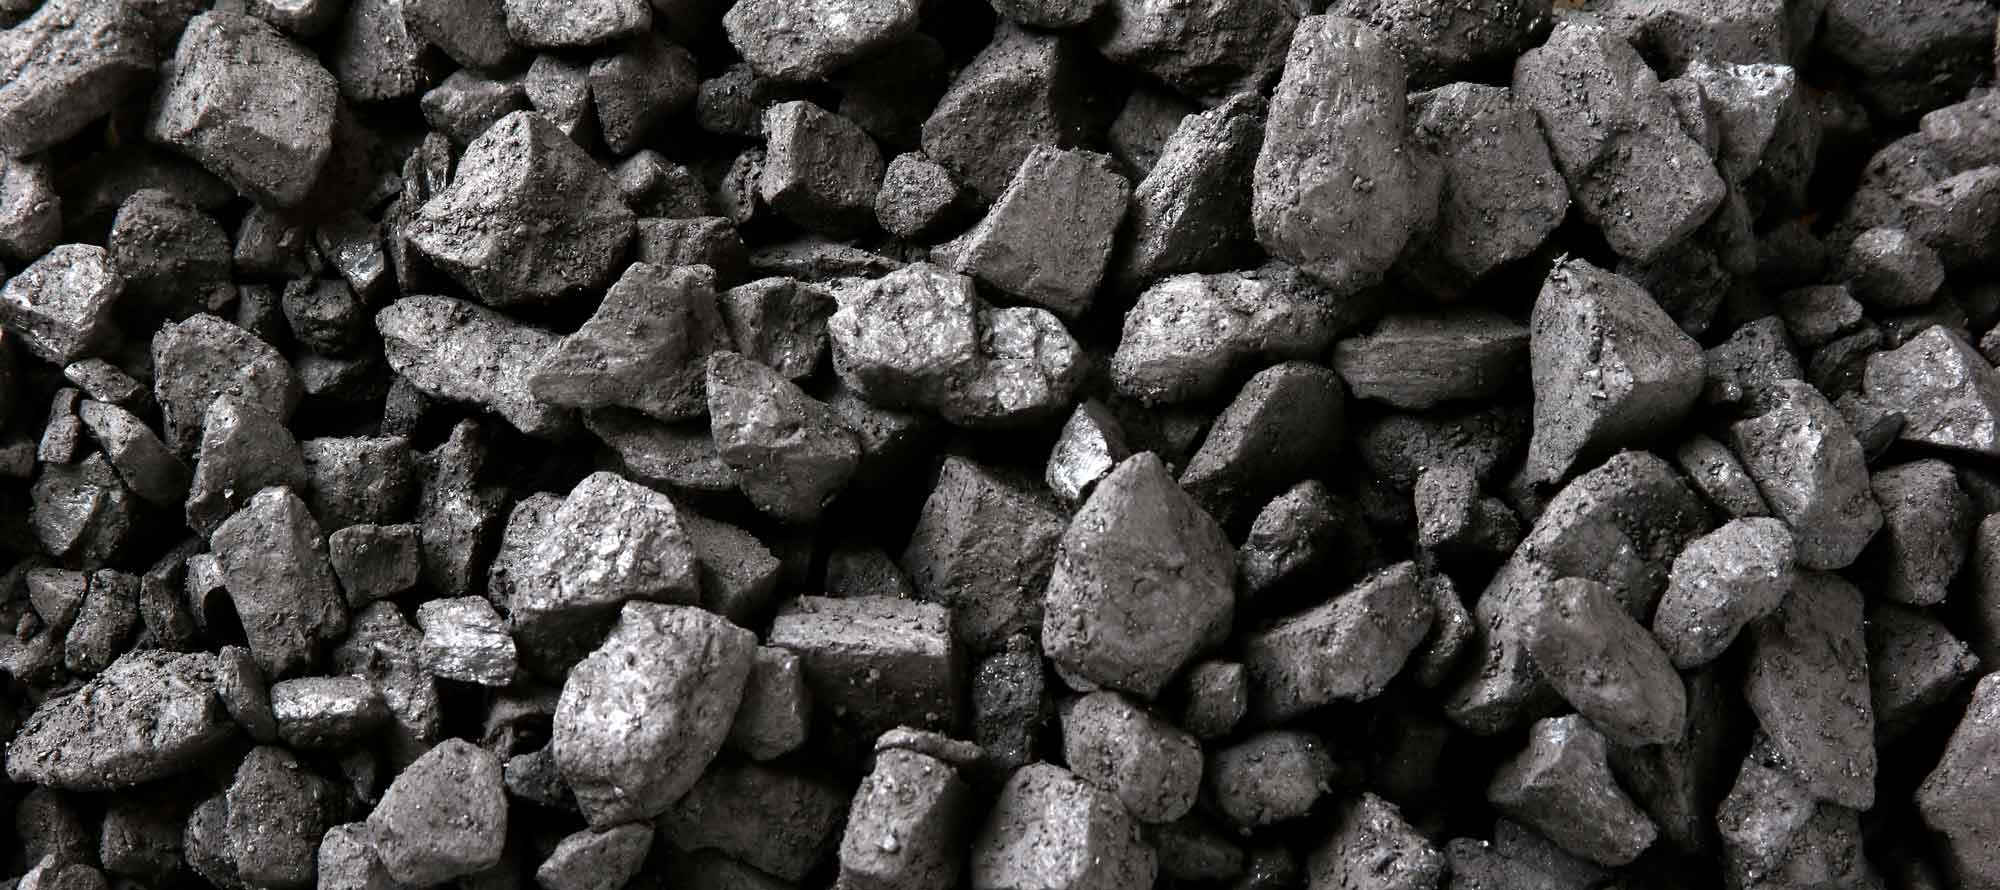 Каменный уголь возобновляемый. Уголь ДПК 50-200. Уголь ДПК 50-200 В мешках. Горючие ископаемые Кубани. Каменный уголь Краснодарский край.